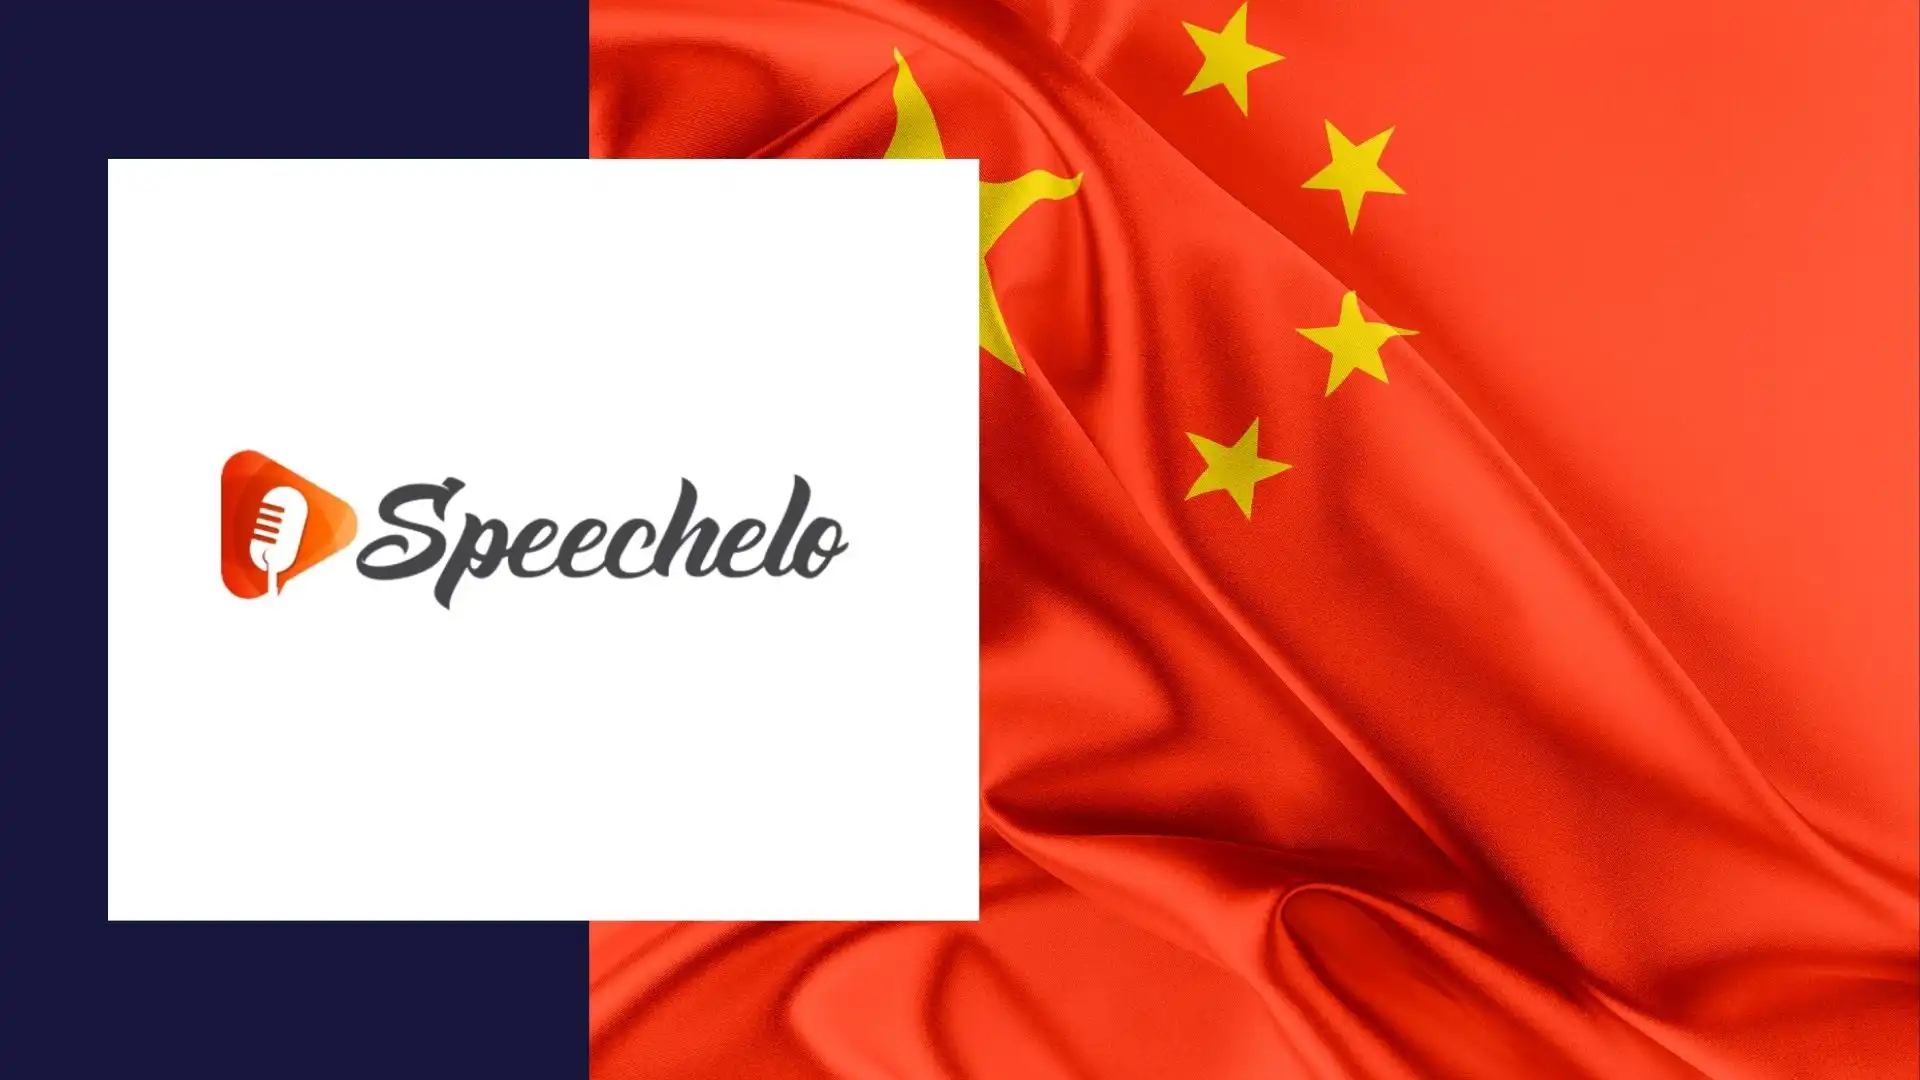 Speechelo Chinese